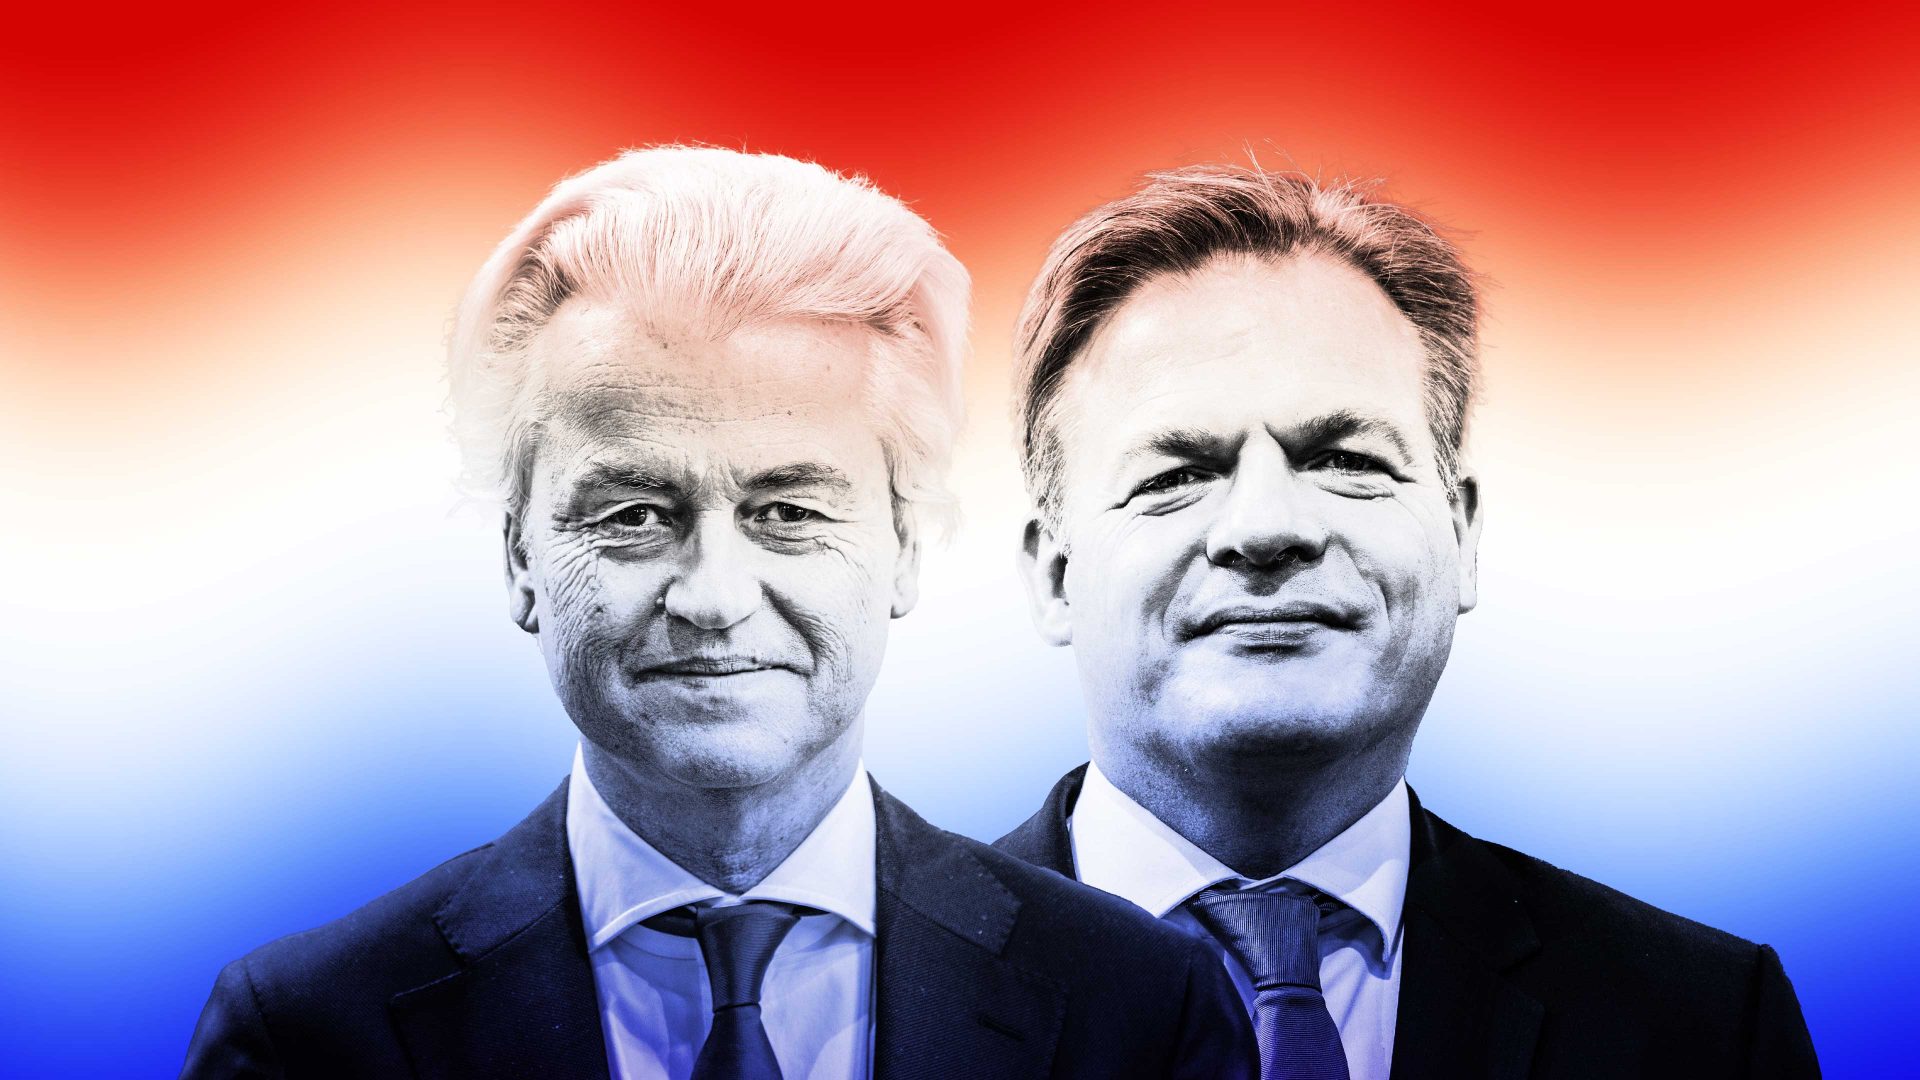 PVV leader Geert Wilders & Pieter Omtzigt of CDA. Photo@ TNE/Getty